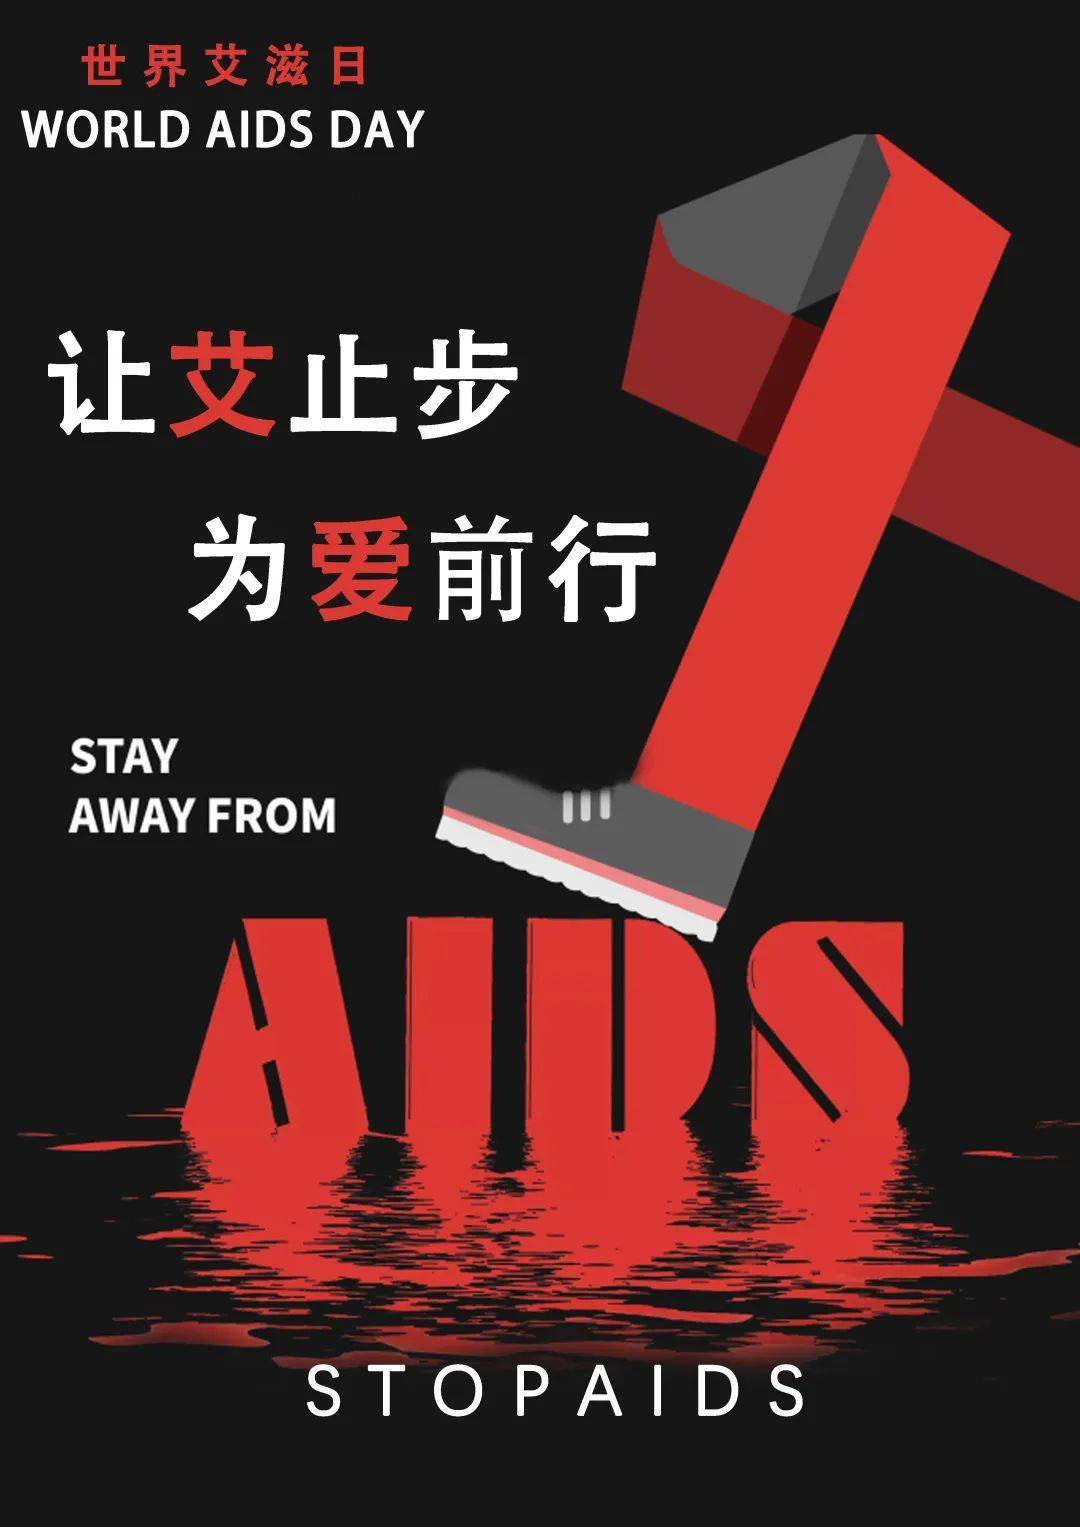 2021年世界艾滋病日海报设计大赛评选结果出炉